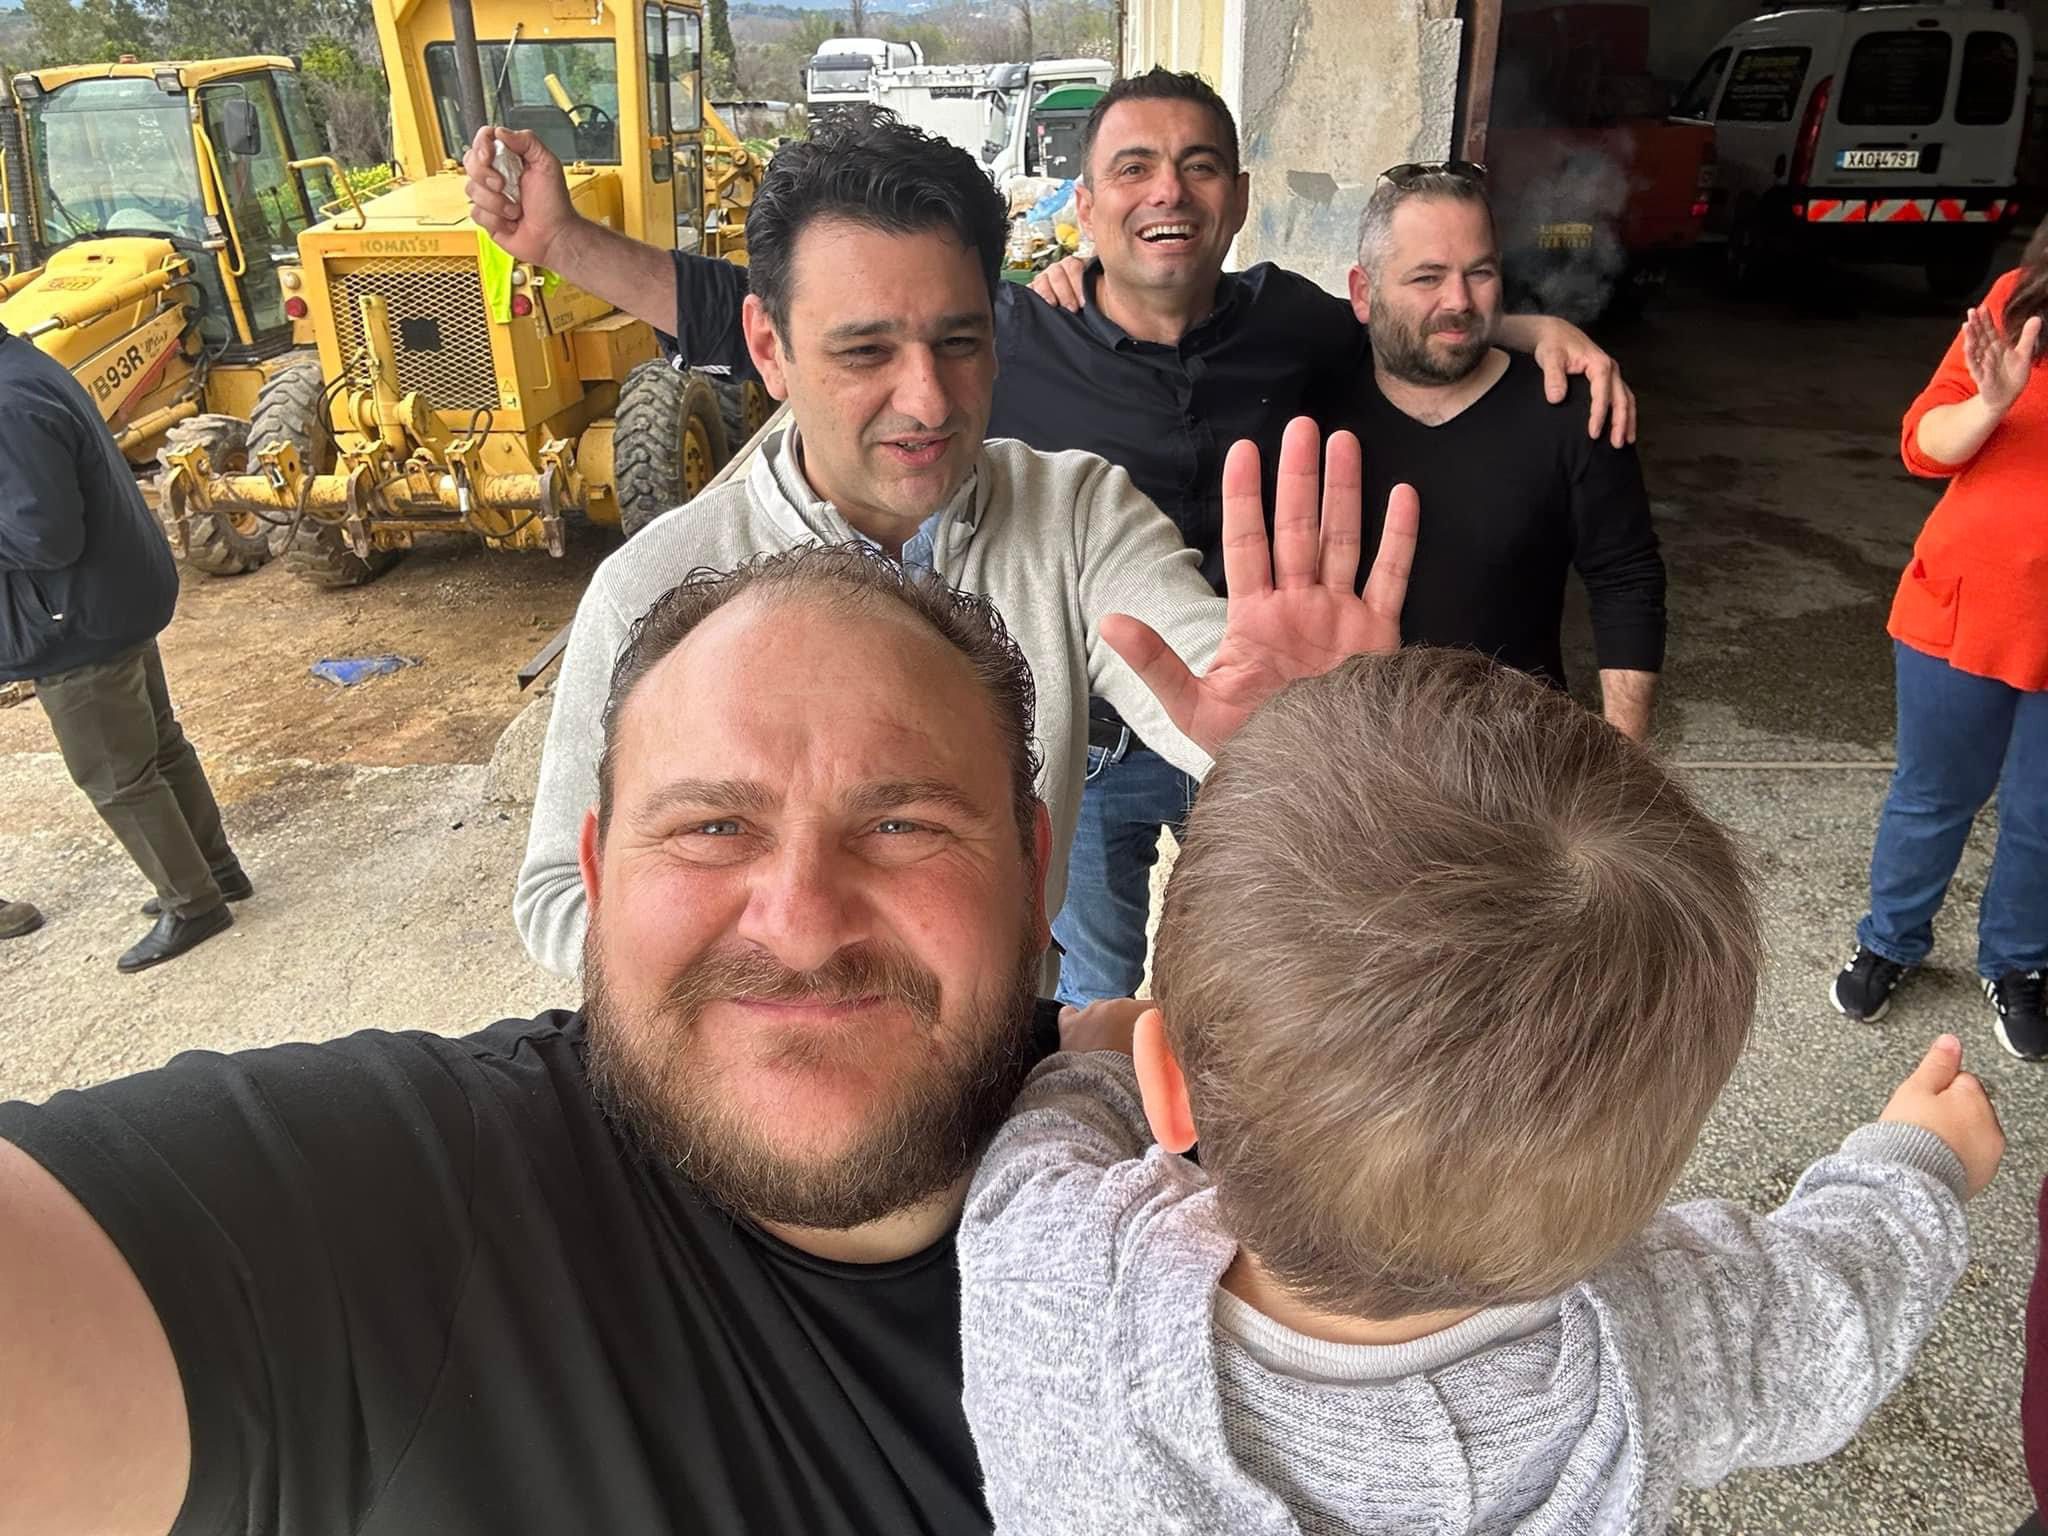 Τσικνοπέμπτη: Δήμαρχος στην Εύβοια τσίκνιζε σε εργοτάξιο του Δήμου παρέα με τους εργαζόμενους